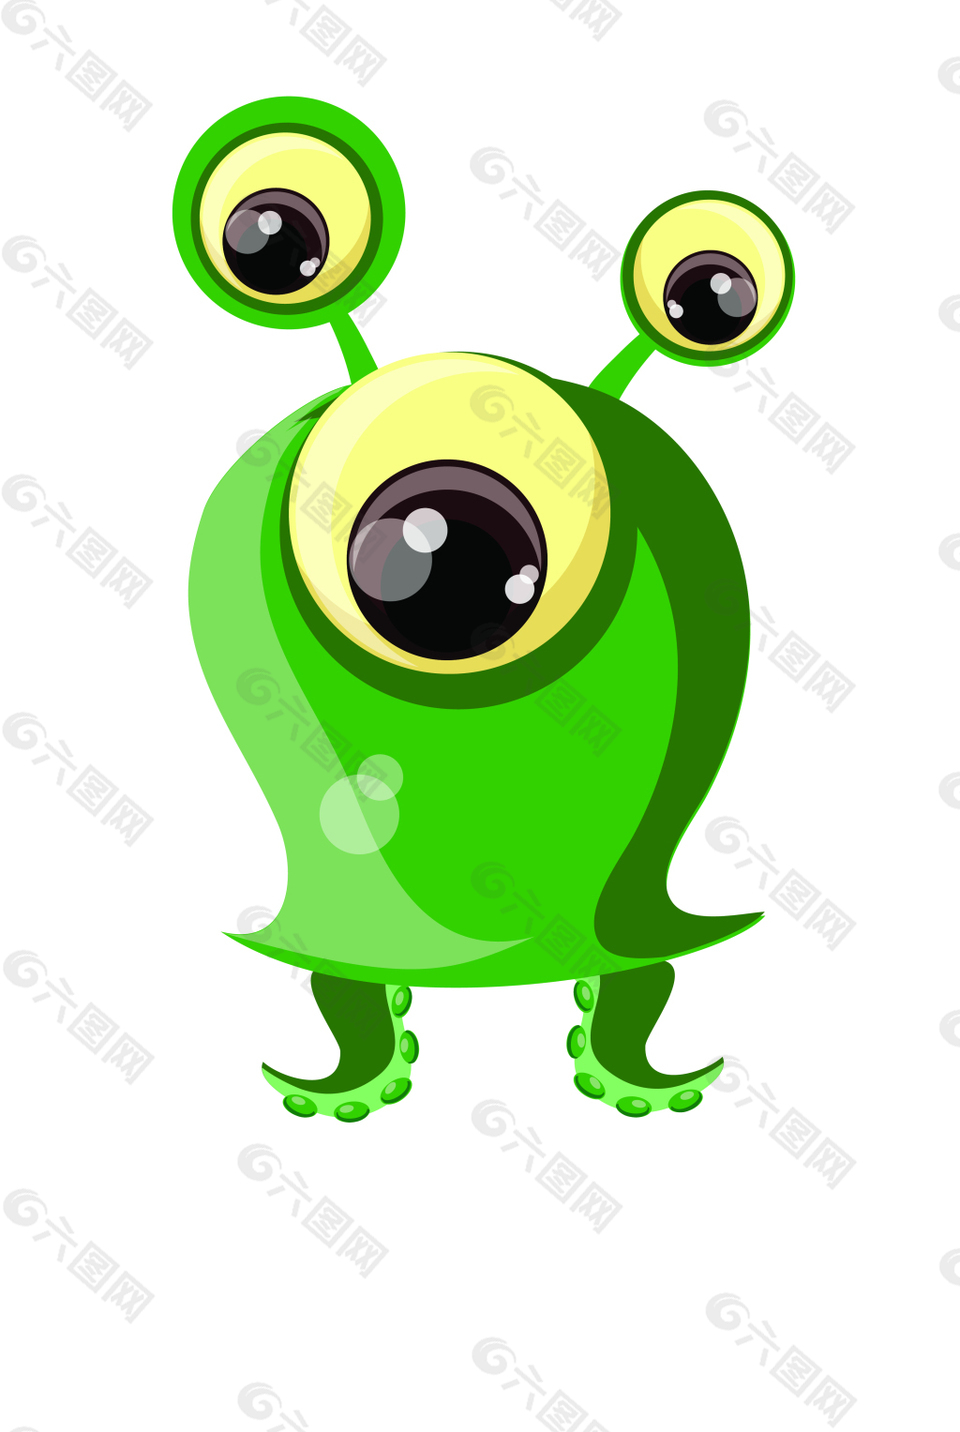 绿色大眼怪物EPS